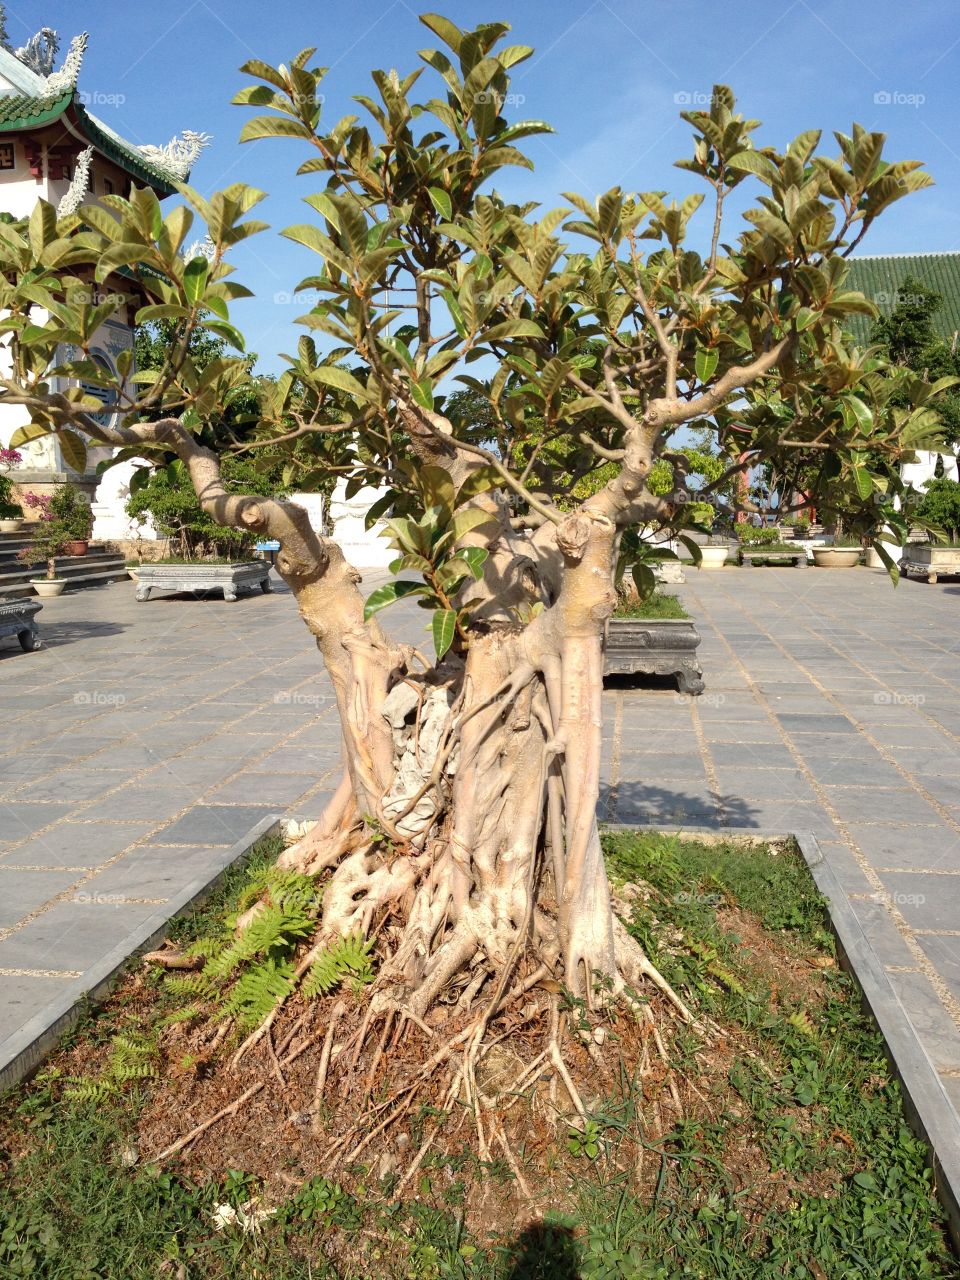 Bonsai tree - Ho Chi Minh City - Vietnam